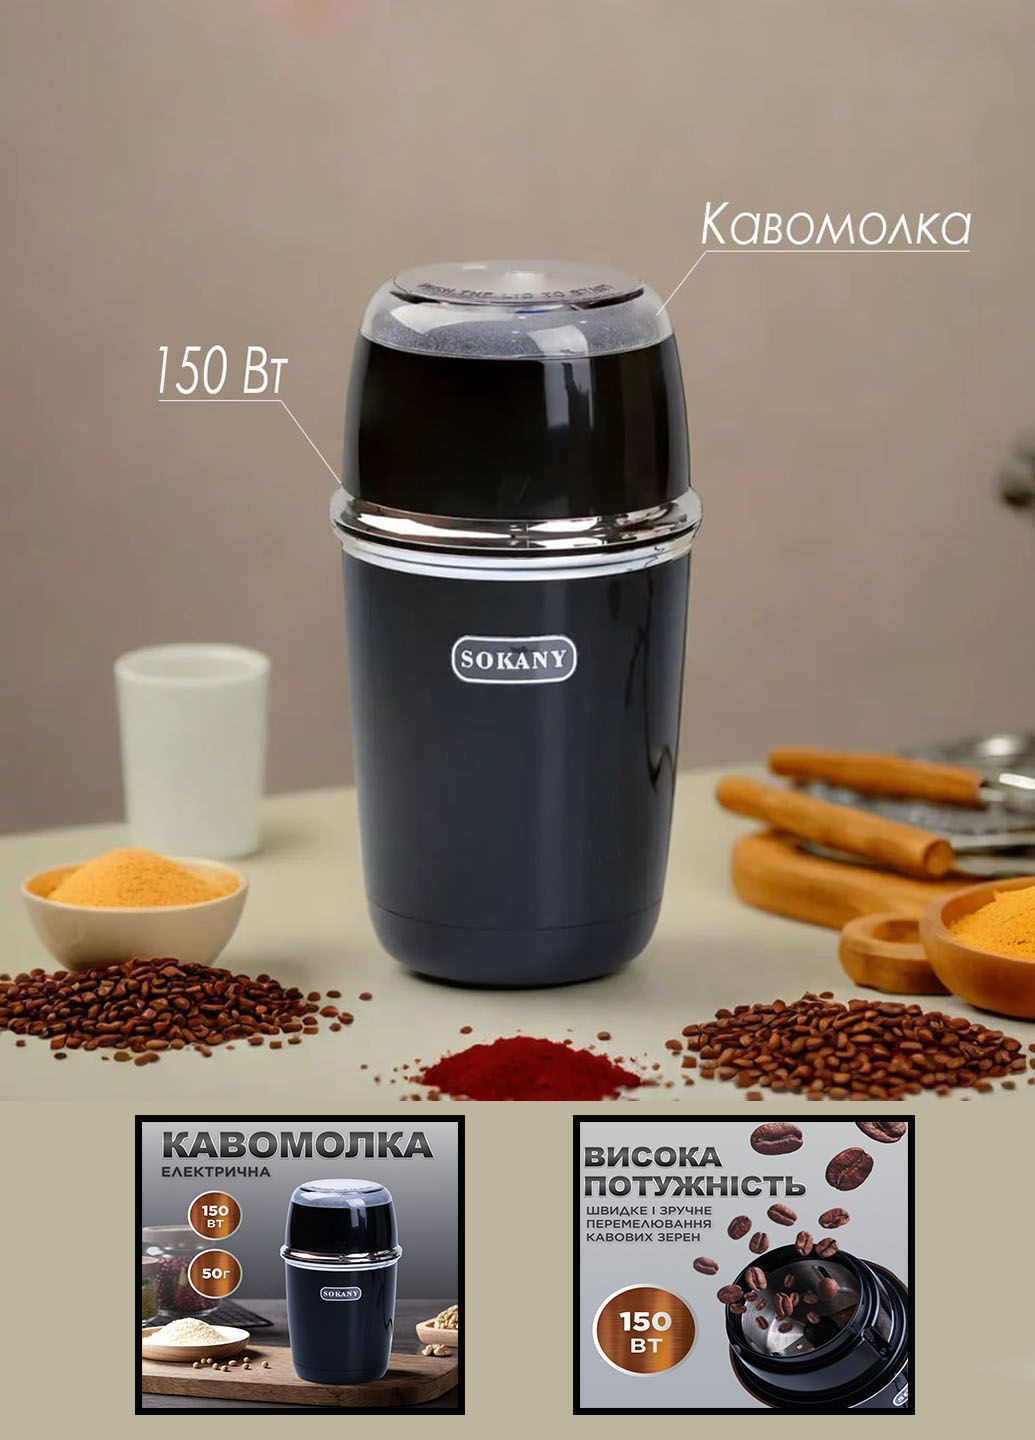 Стильна кавомолка електрична ротаційна 50 г 150 Вт Sokany sk-3025b (285719065)